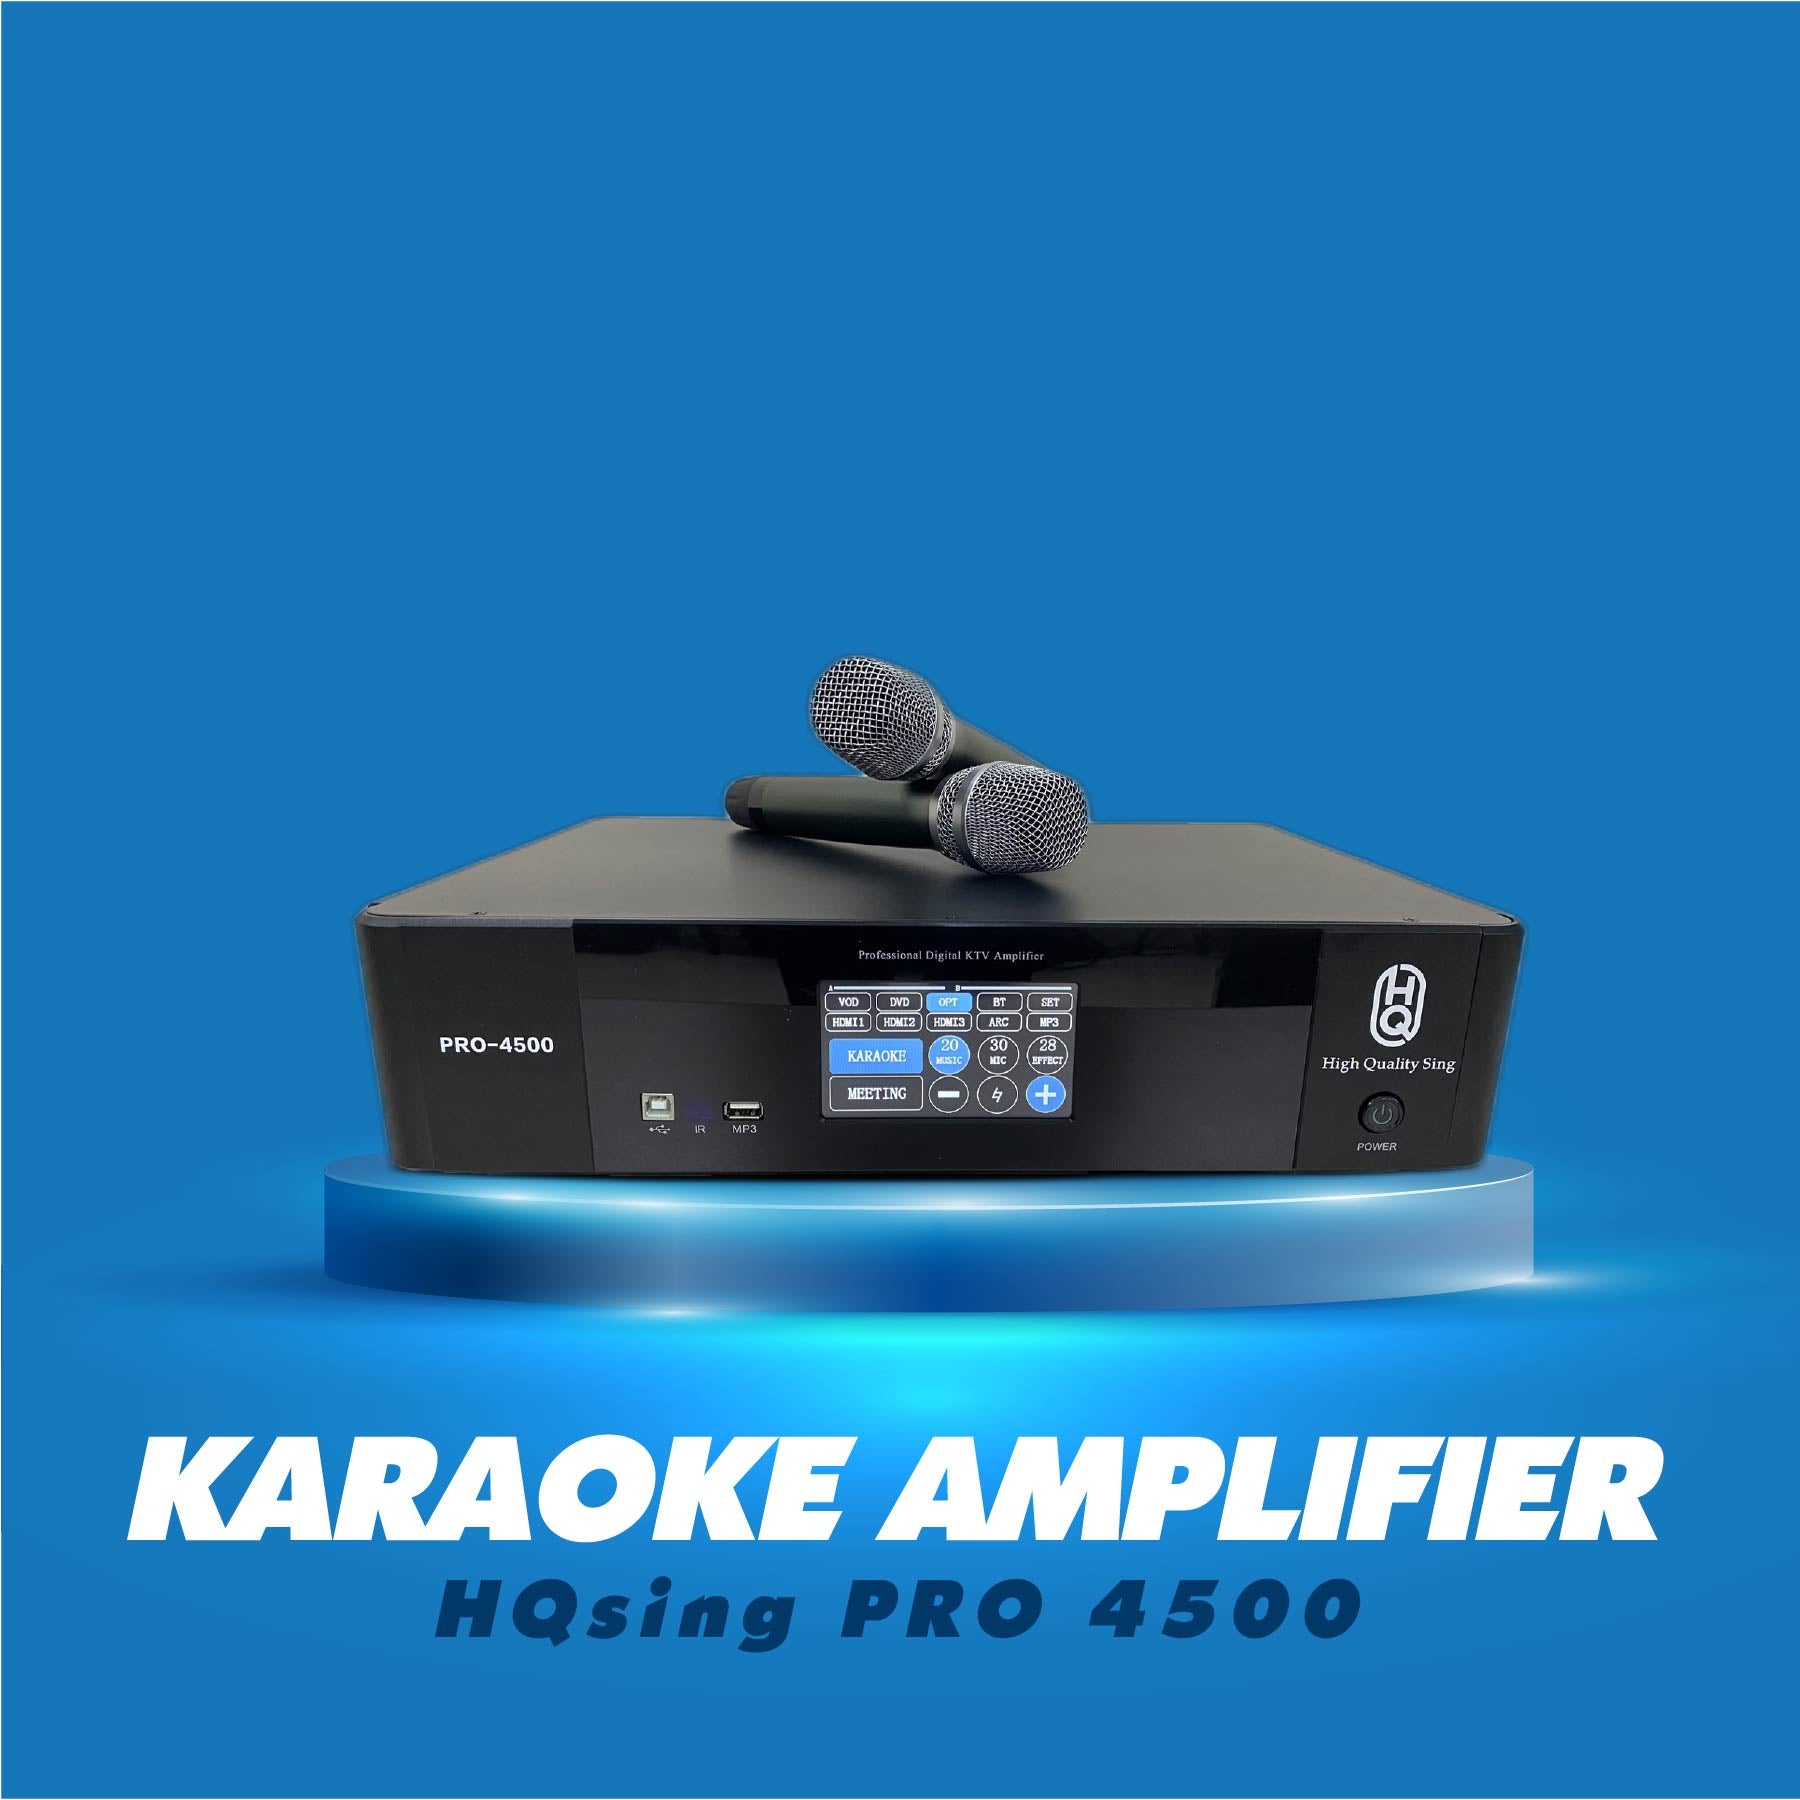 Karaoke Amplifier 3 in 1 PRO-4500